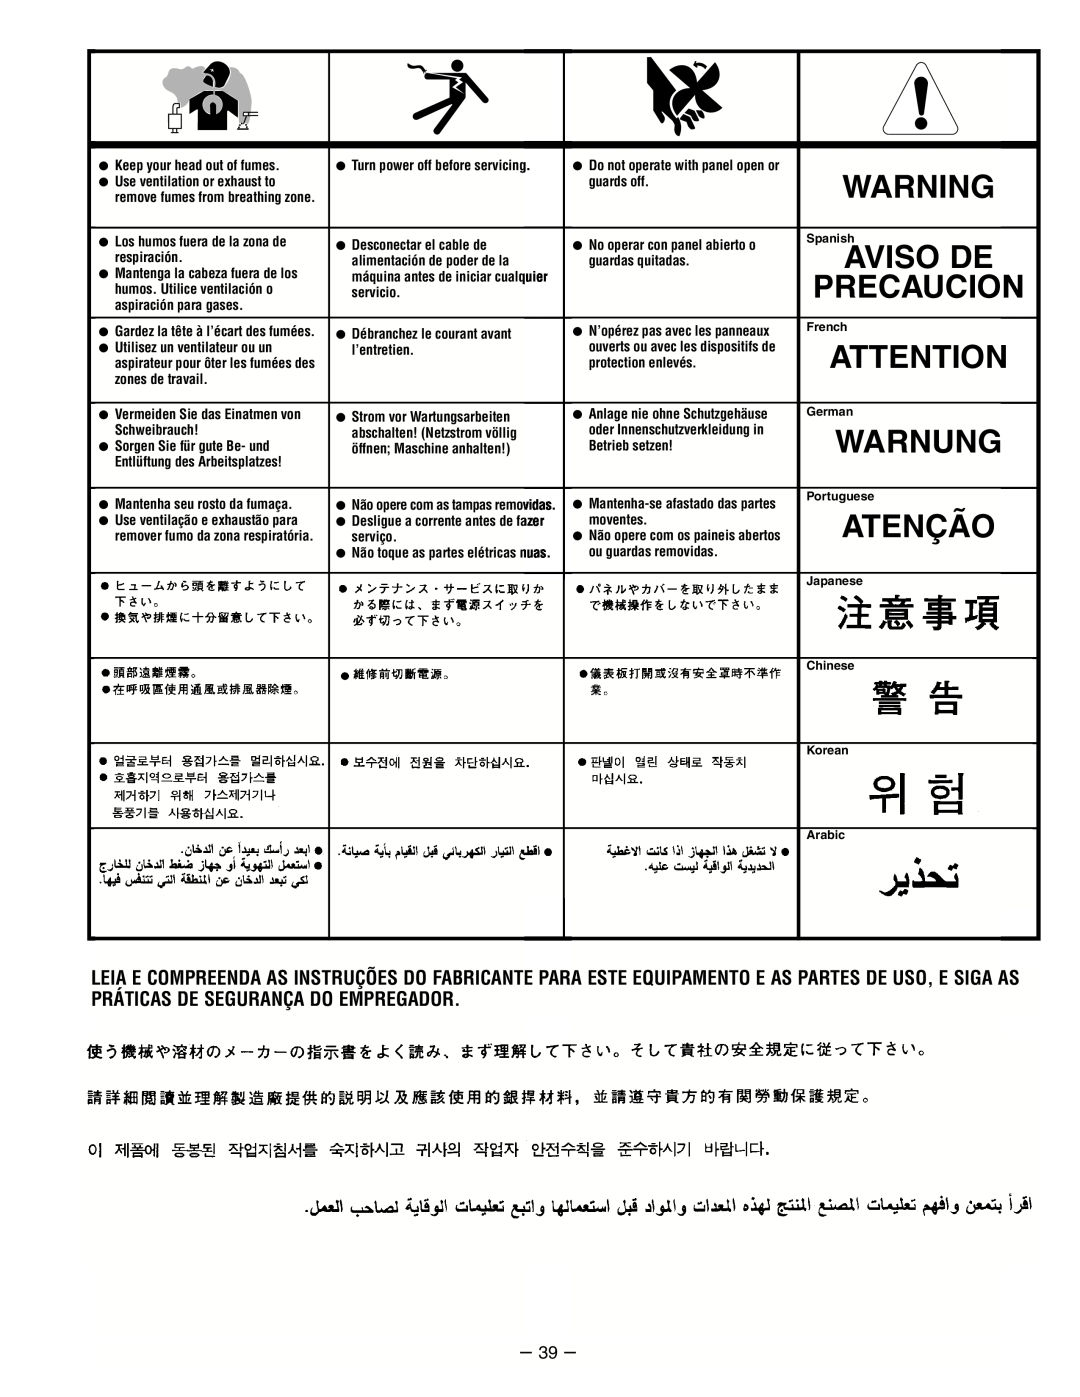 Lincoln Electric IM511-D manual Aviso De, Warnung, Atenção, Precaucion 